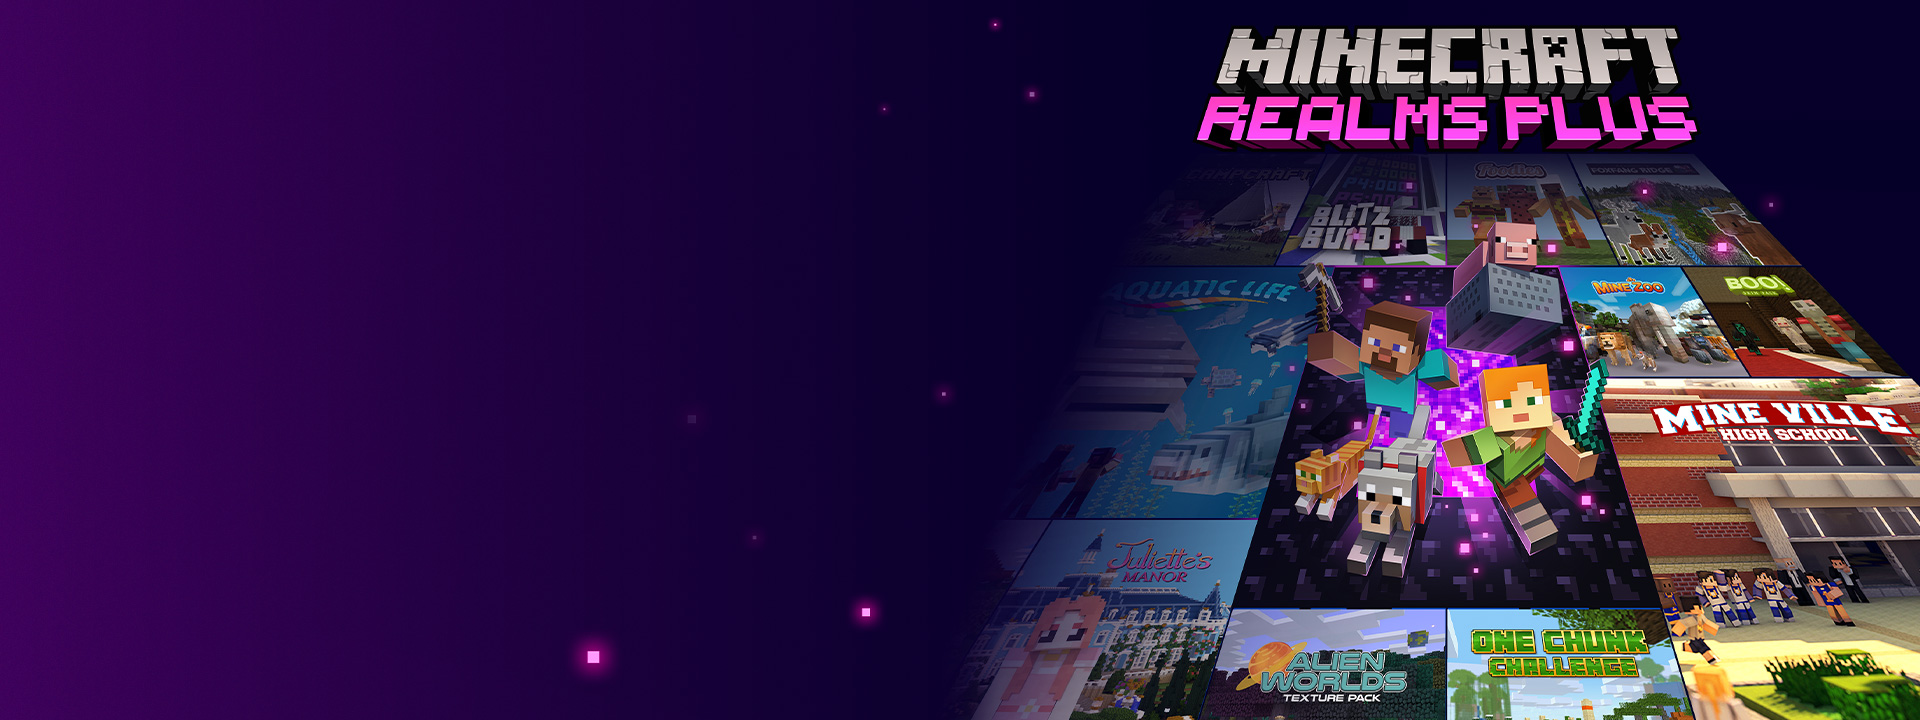 Minecraft Realms Plus, postaci z gry Minecraft wychodzące z portalu Nether. Obok portalu znajdują się inne grafiki z pudełek gier.